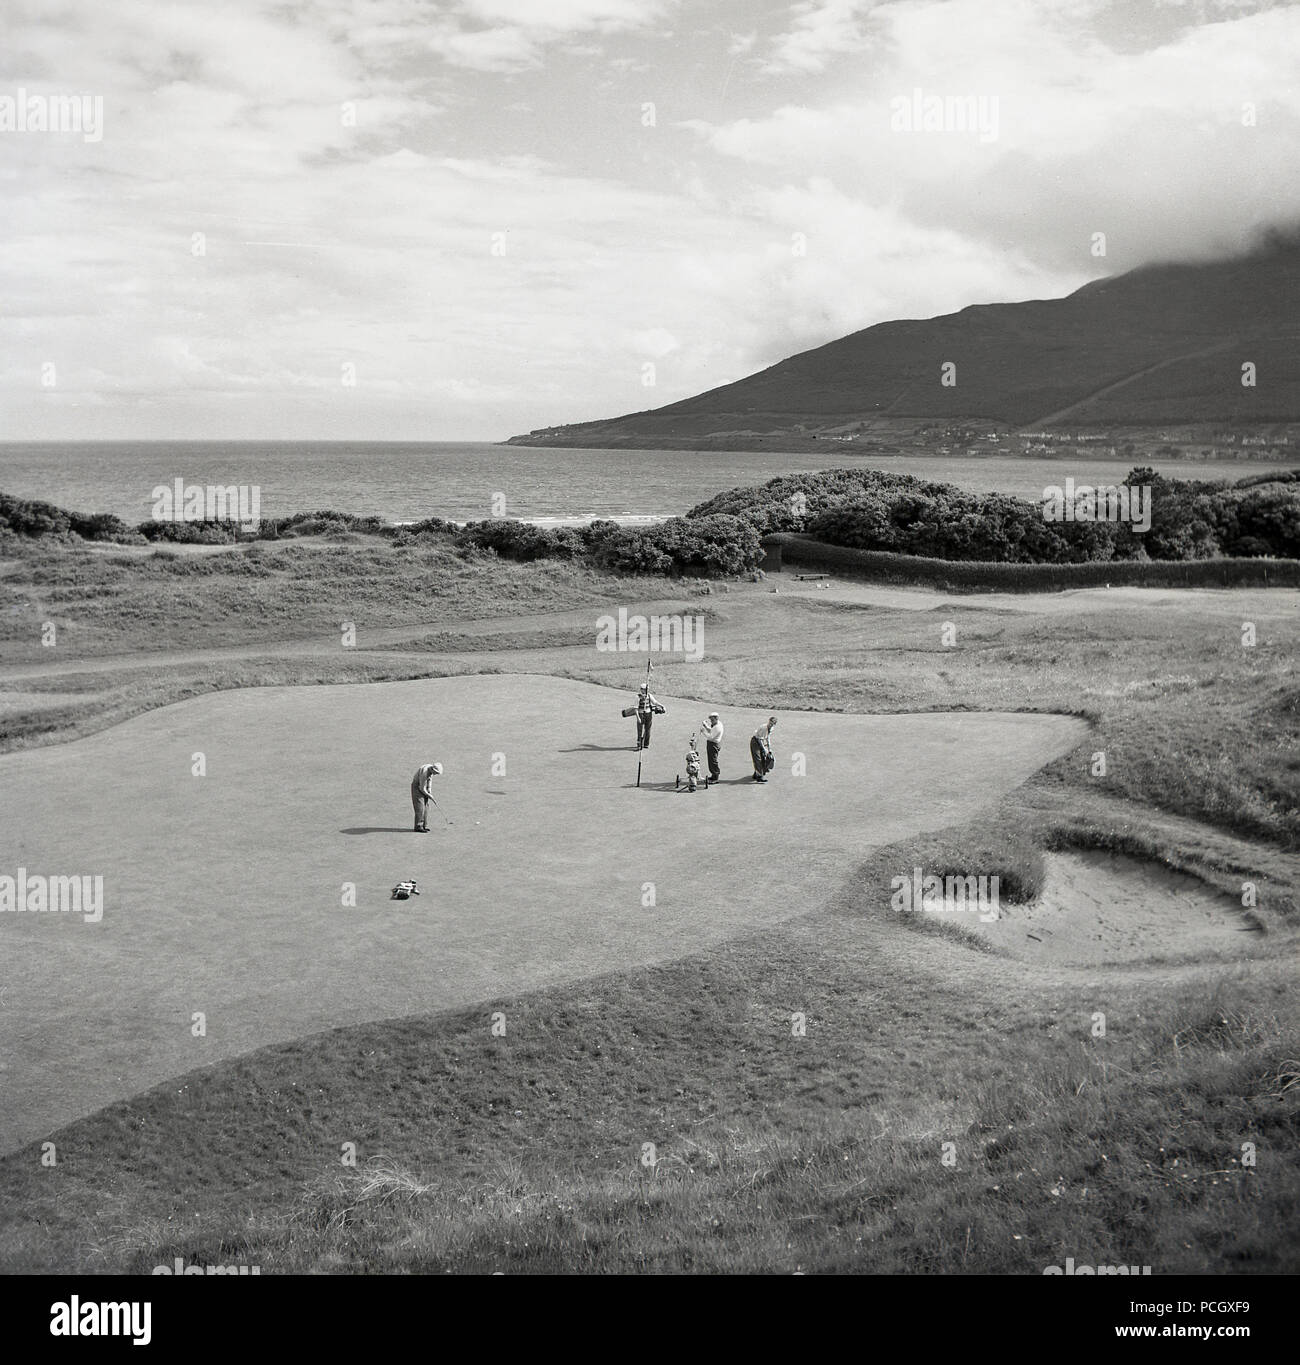 Années 1950, historique, vue de dessus du golf sur le parcours de Portrush dans Co. d'Antrim, en Irlande du Nord. Les golfeurs d'Amateur sur un grand putting green par la côte sur l'océan Atlantique. Banque D'Images